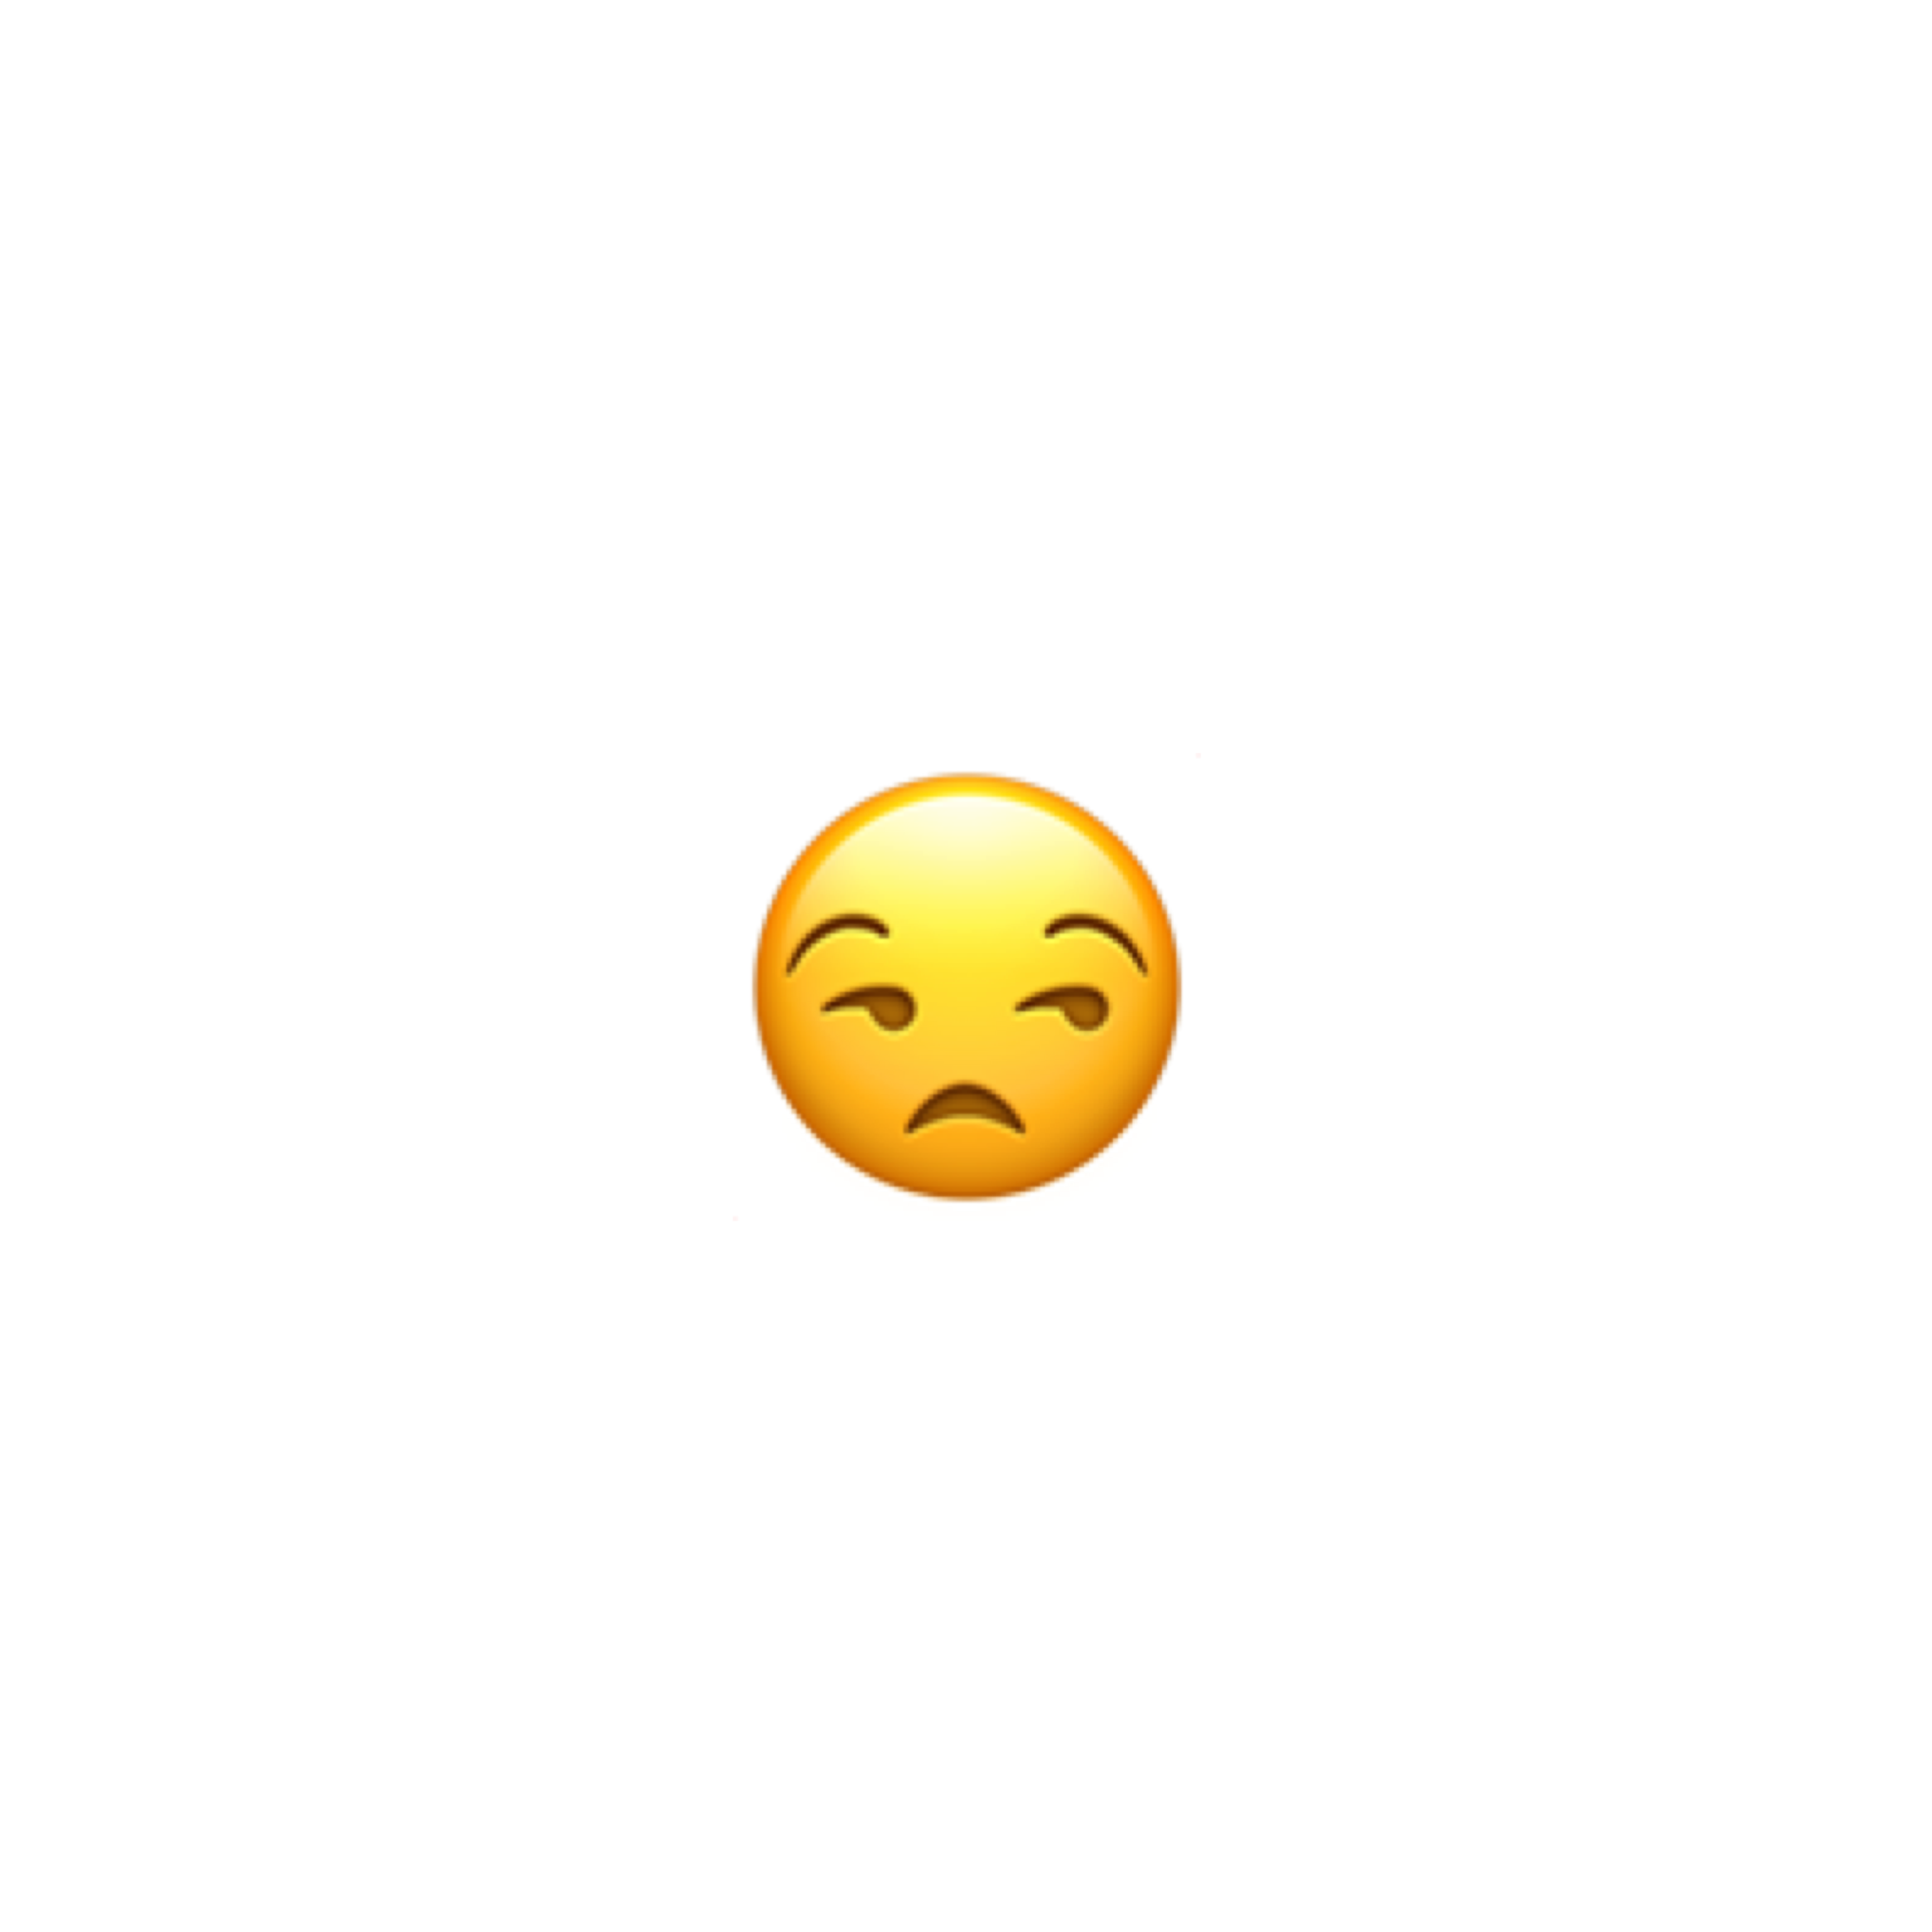 emoji iphone sticker freetoedit #emoji sticker by @dinogrill.